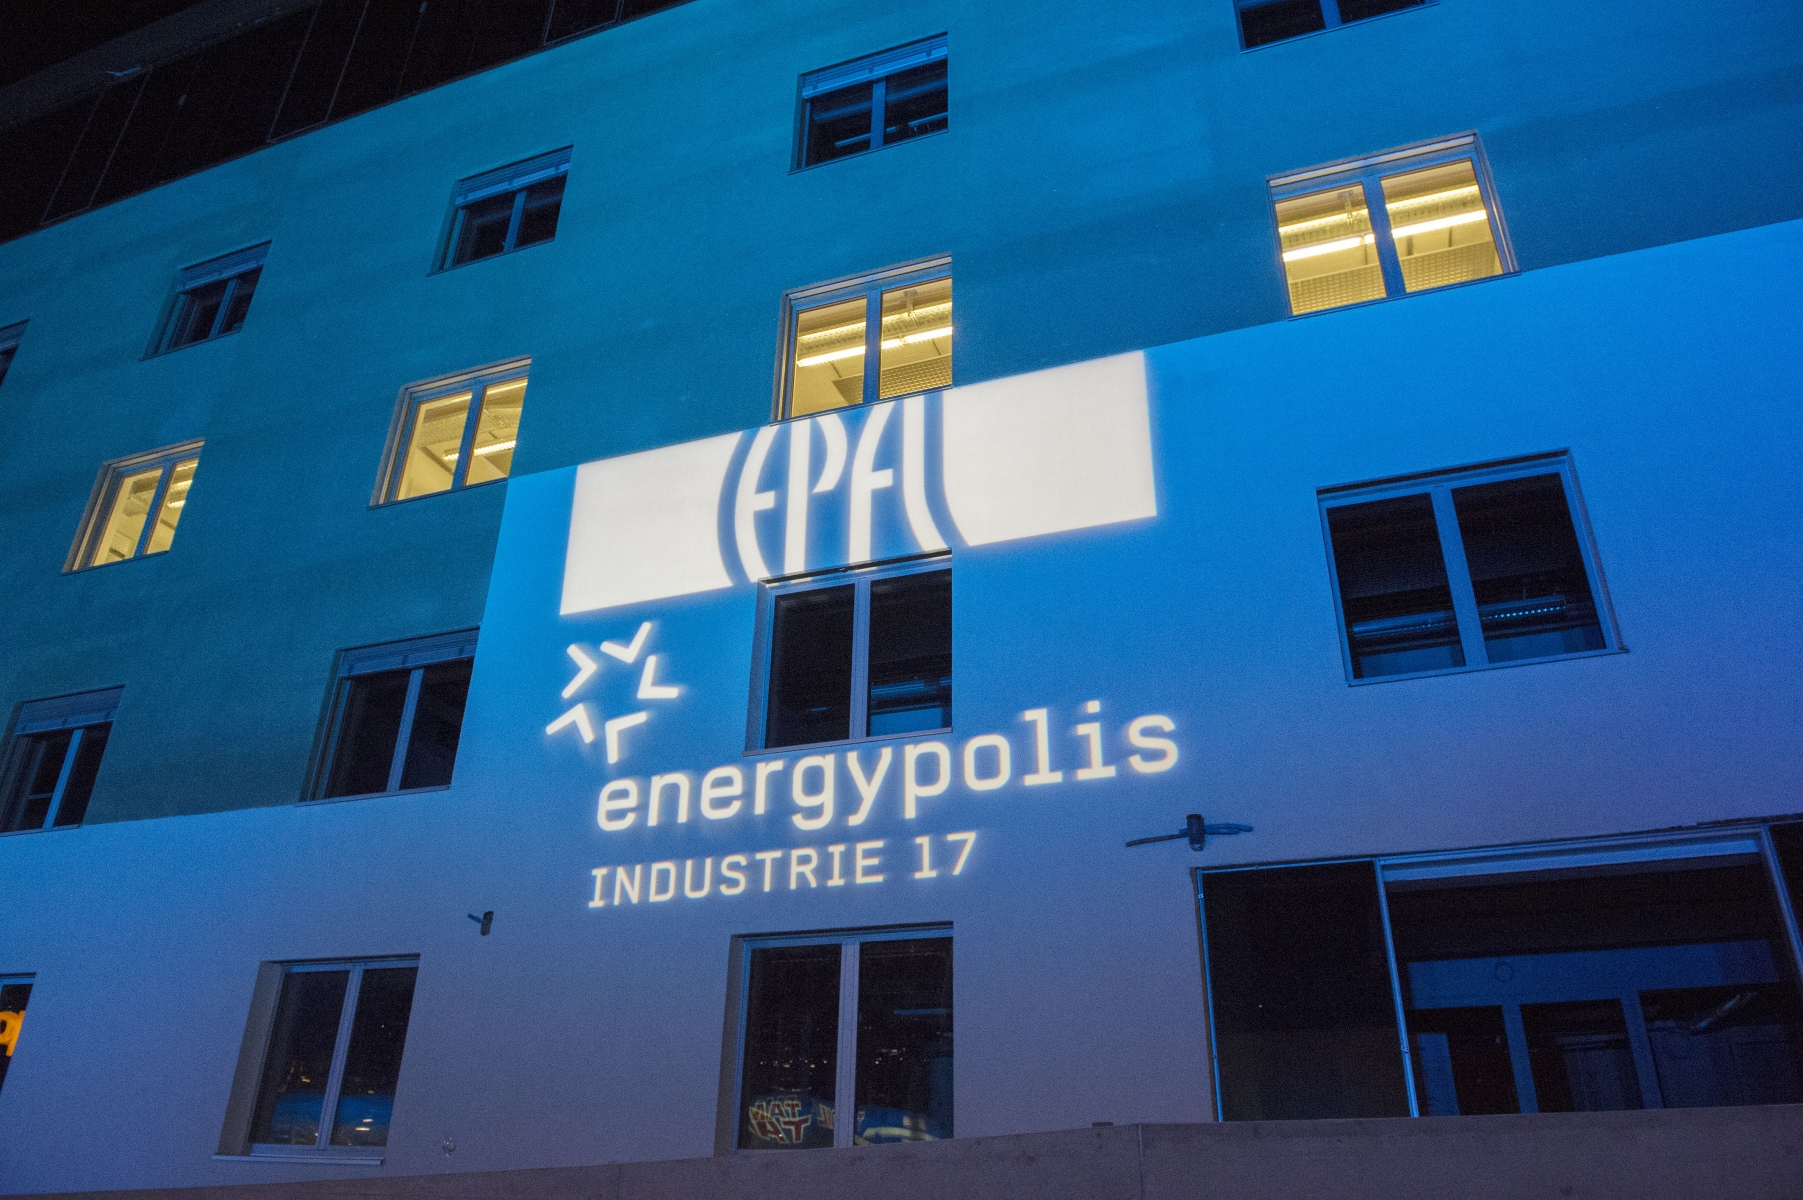 Le bâtiment d'Energypolis à Sion accueille des chaires de l'EPFL qui performent sur le plan mondial.